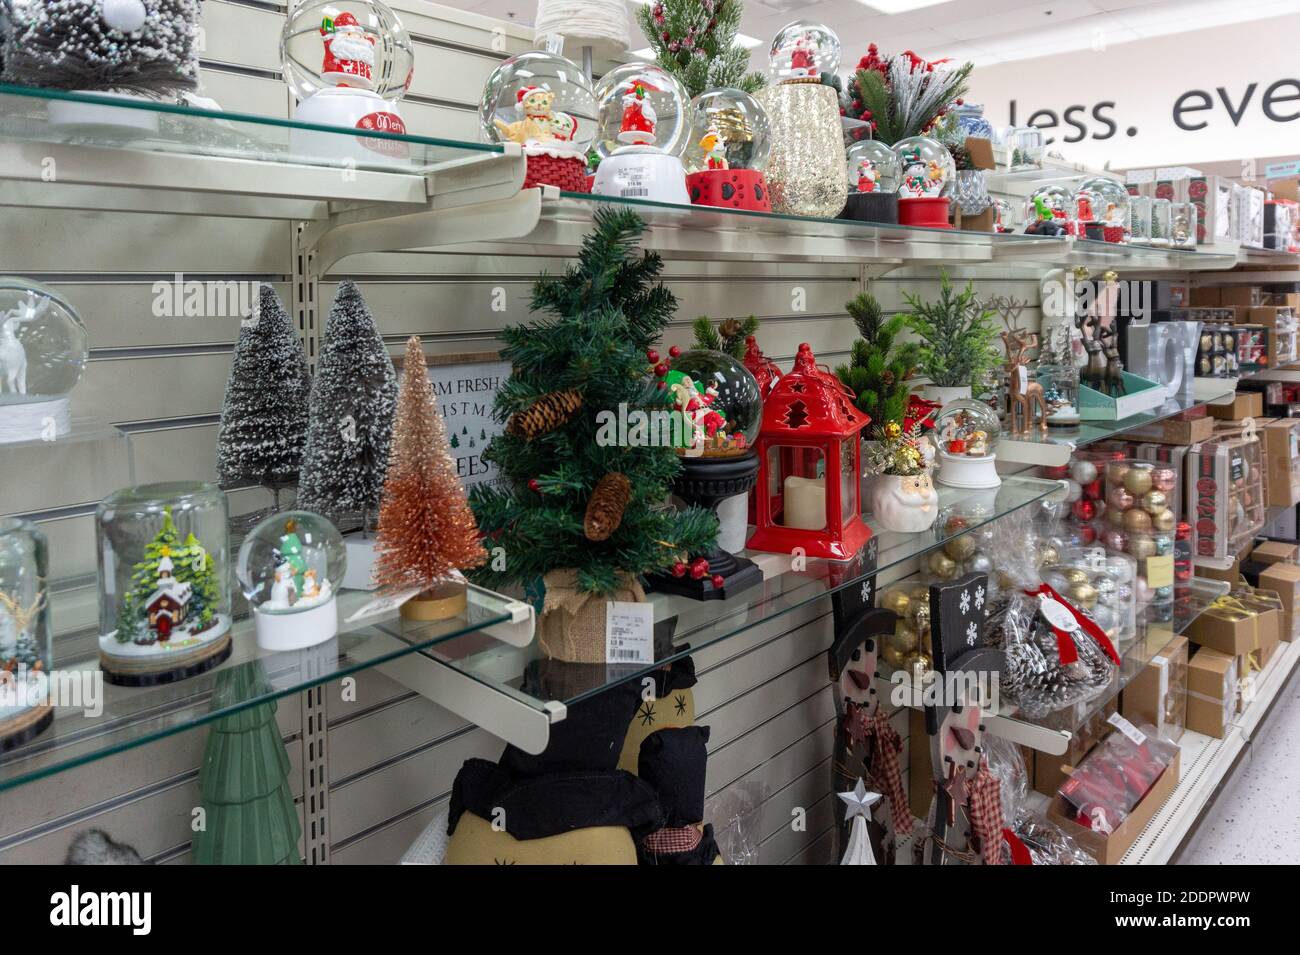 Weihnachtsartikel auf einem Ladenregal, Toronto, Kanada Stockfoto